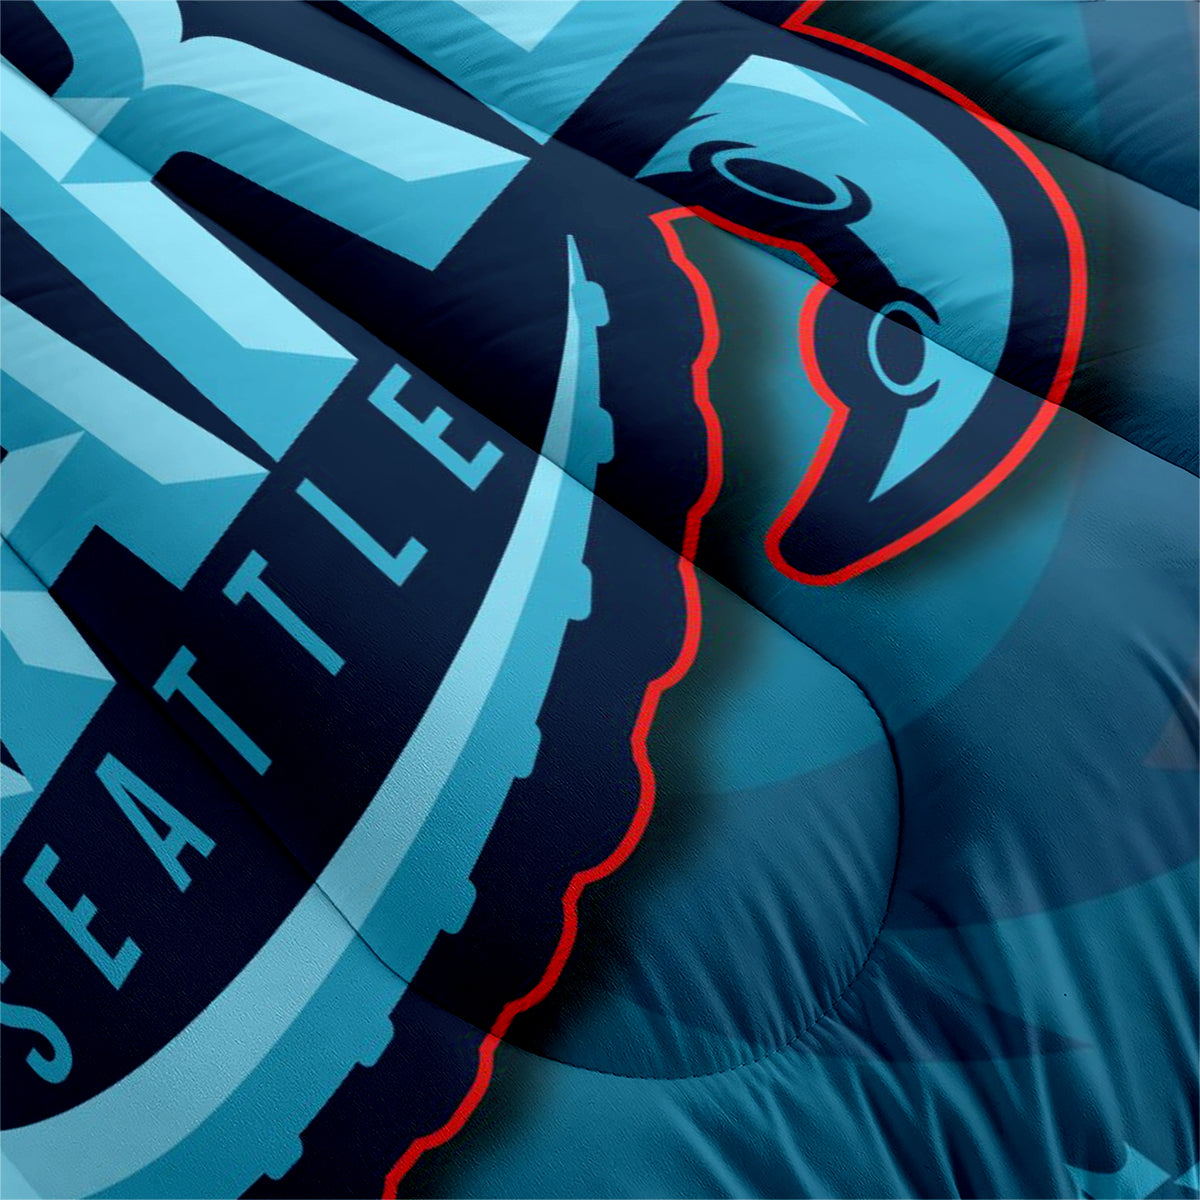 Seattle Kraken Hockey League Comforter Pillowcase Sets Blanket All Season Reversible Quilted Duvet